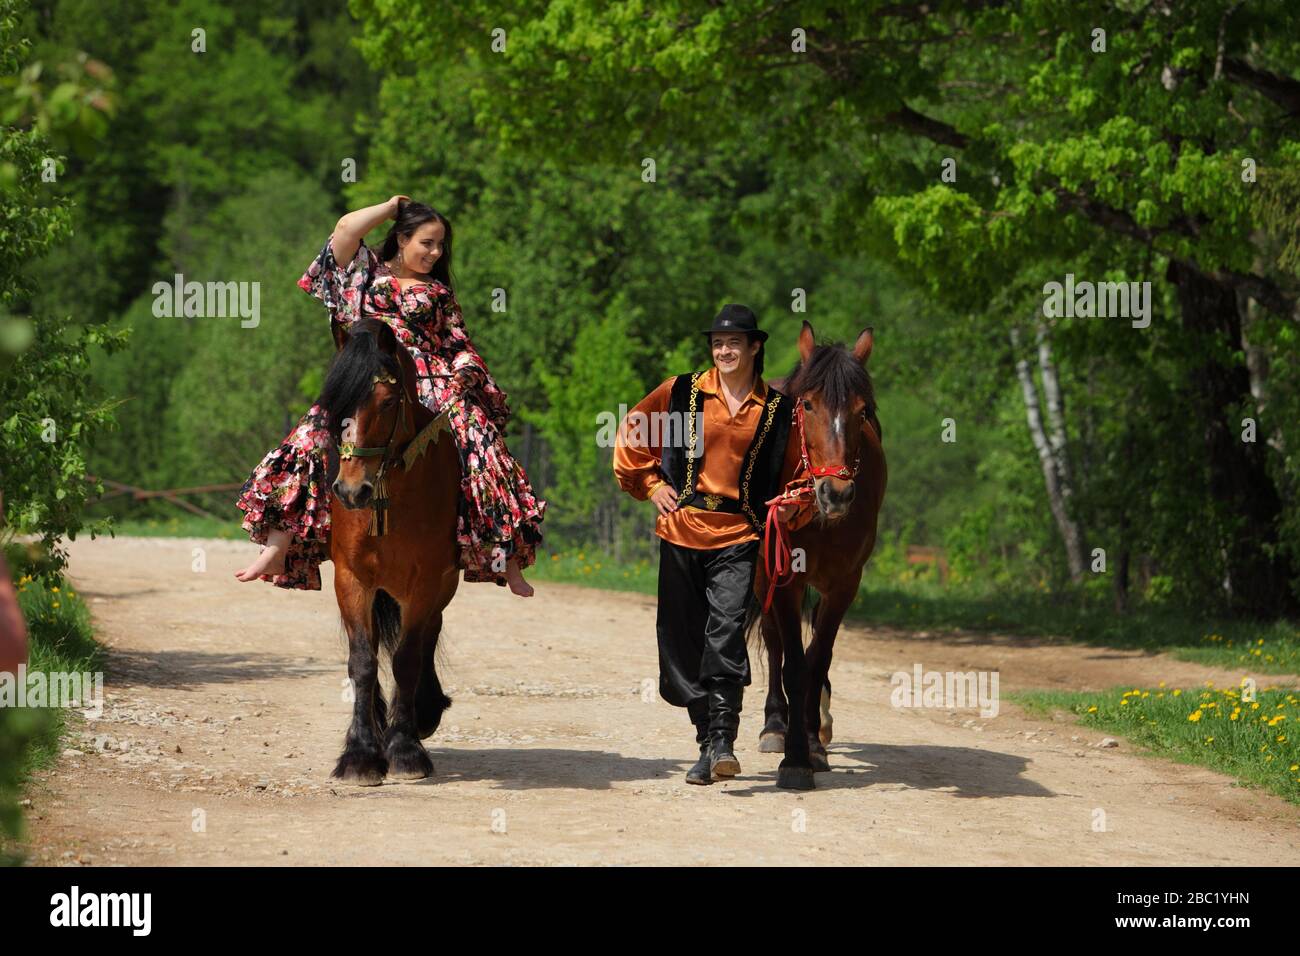 Zigeunerpaar in traditionellen Kostümen spazieren mit einem Pferd im Sommerwald Stockfoto